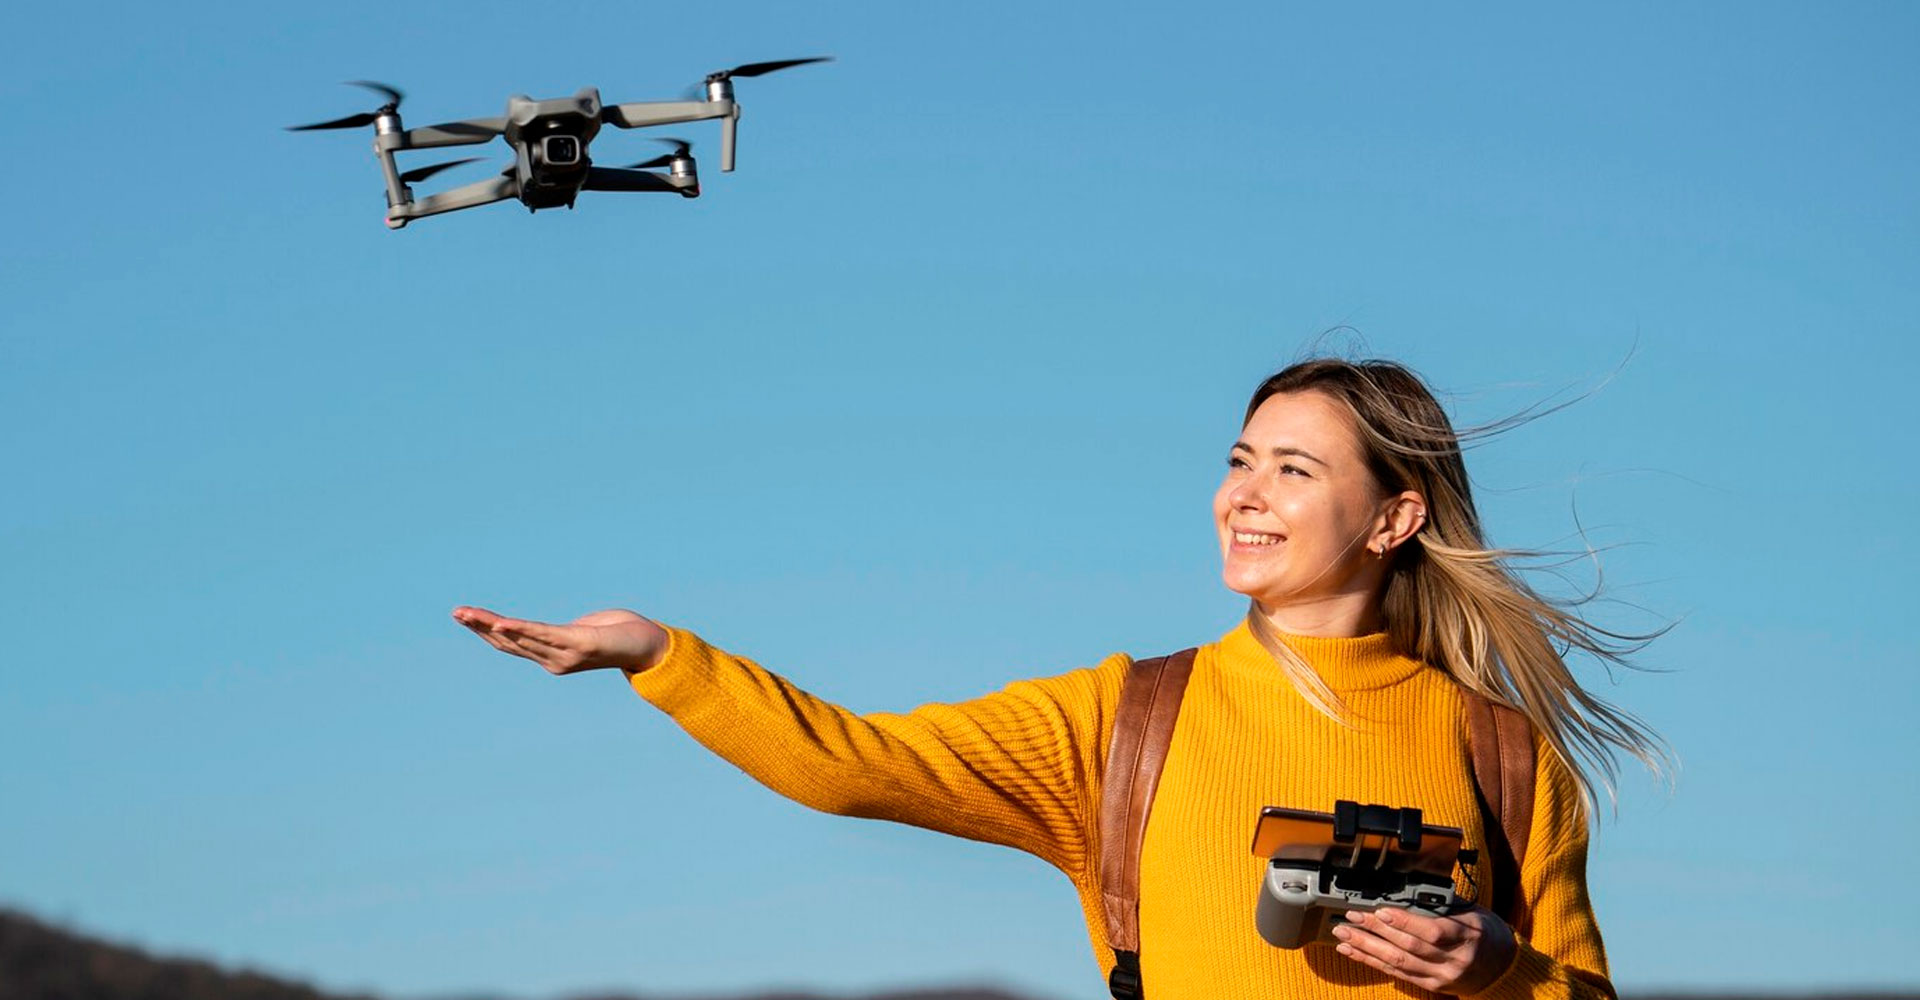 El futuro de la gestoria aeronautica y la industria de los drones